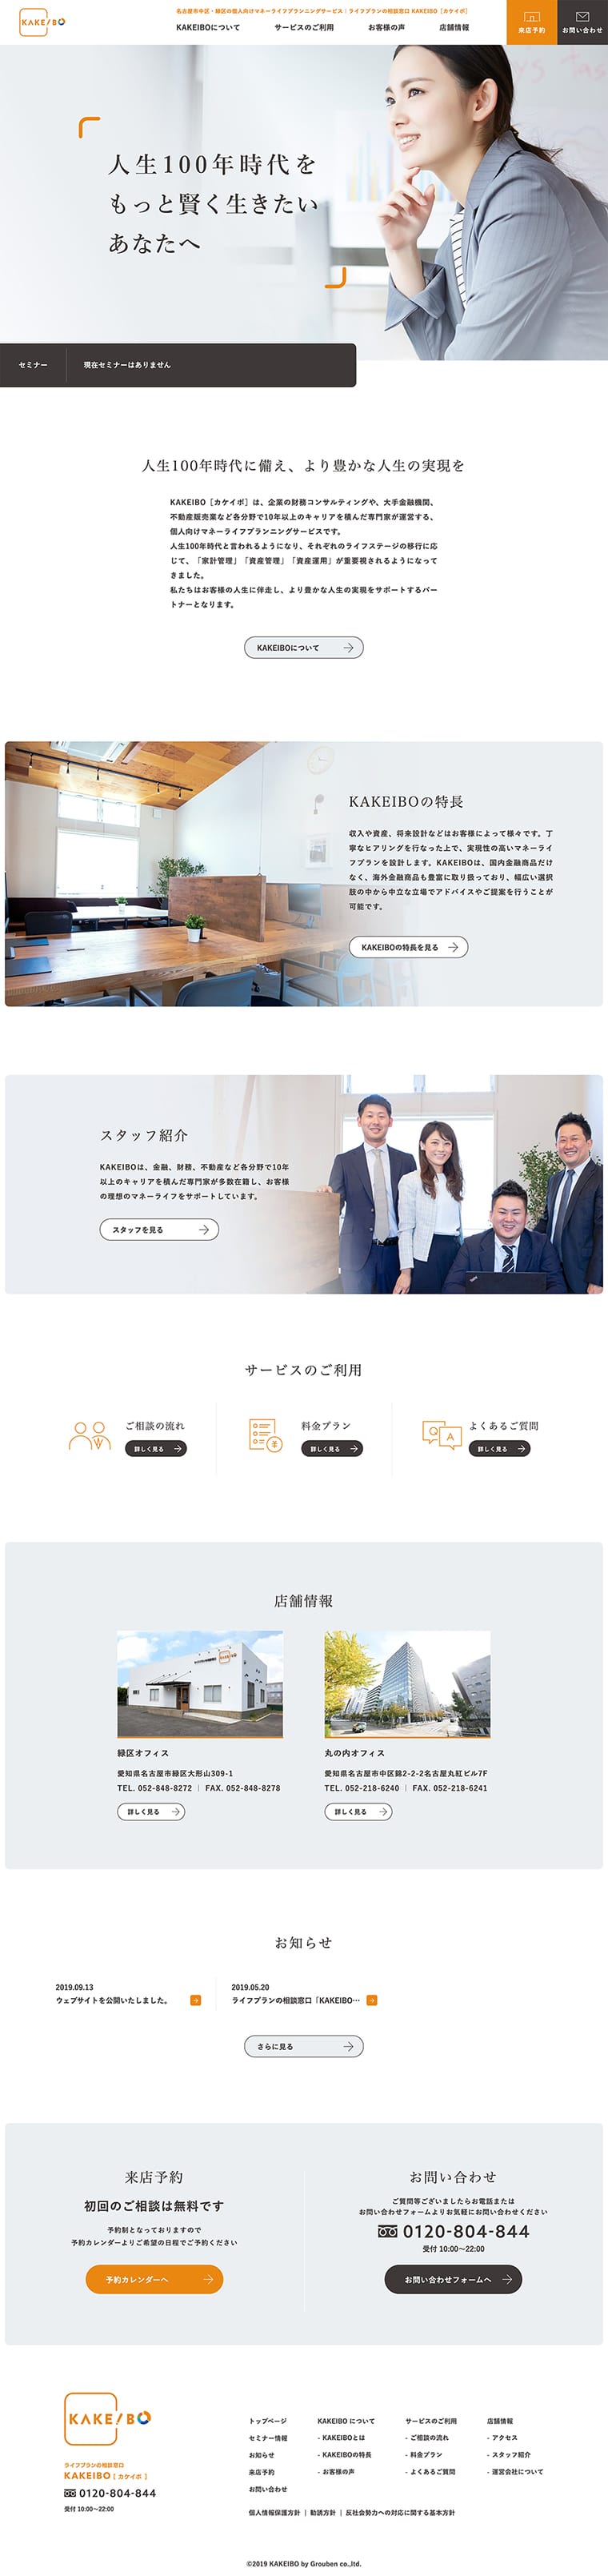 KAKEIBO ブランディング・ロゴデザイン・サインデザイン・Webデザイン・パンフレットデザイン